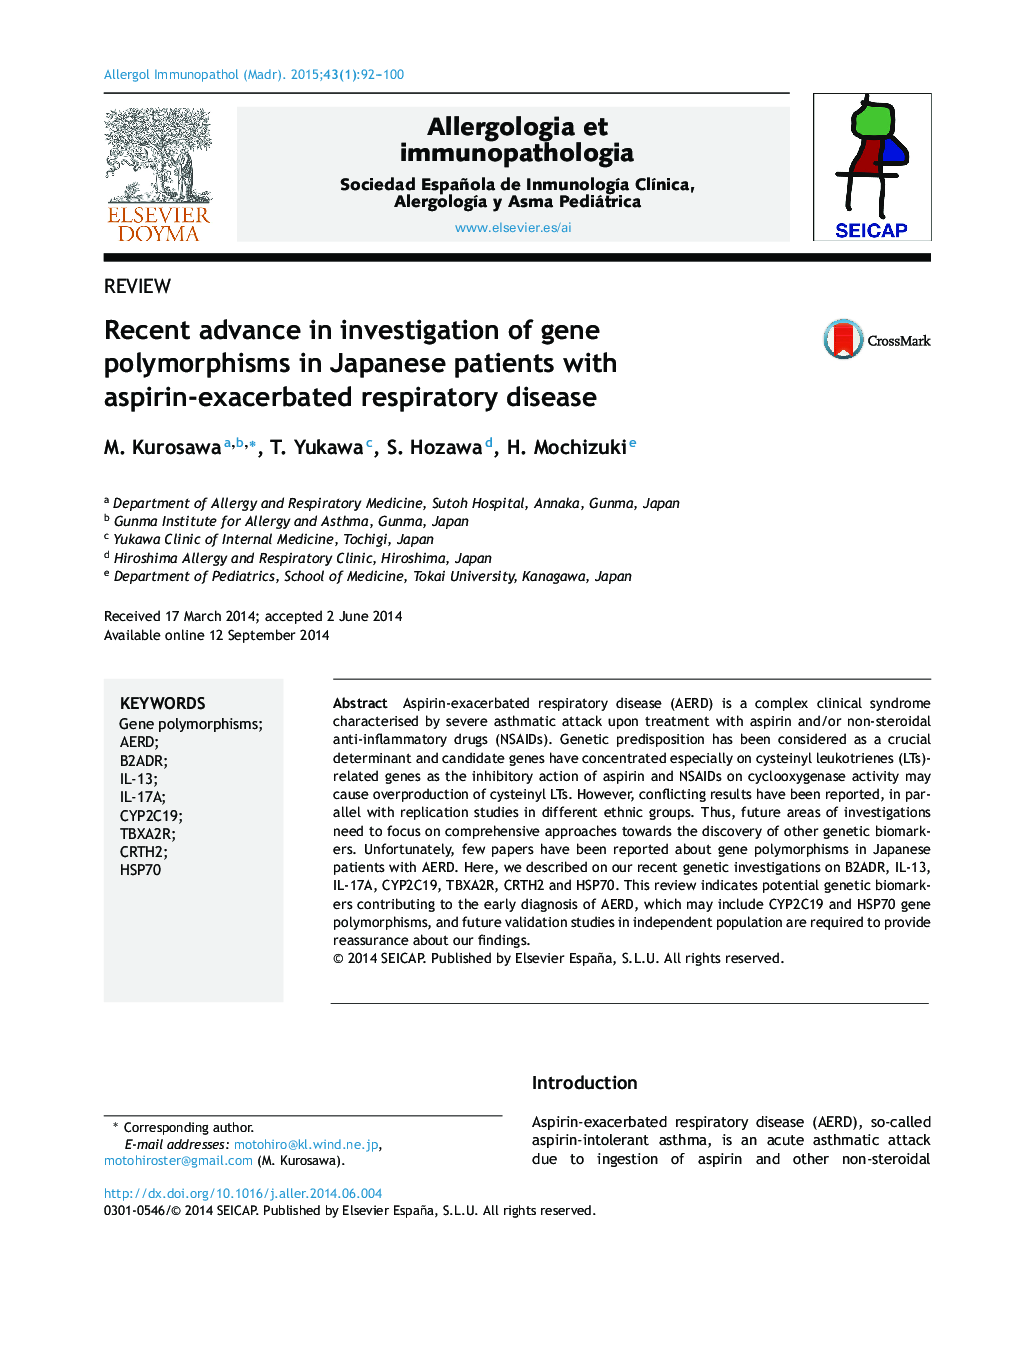 پیشرفت اخیر در بررسی پلی مورفیسم ژن در بیماران ژاپنی با بیماری آسپیرین دچار تنفس 